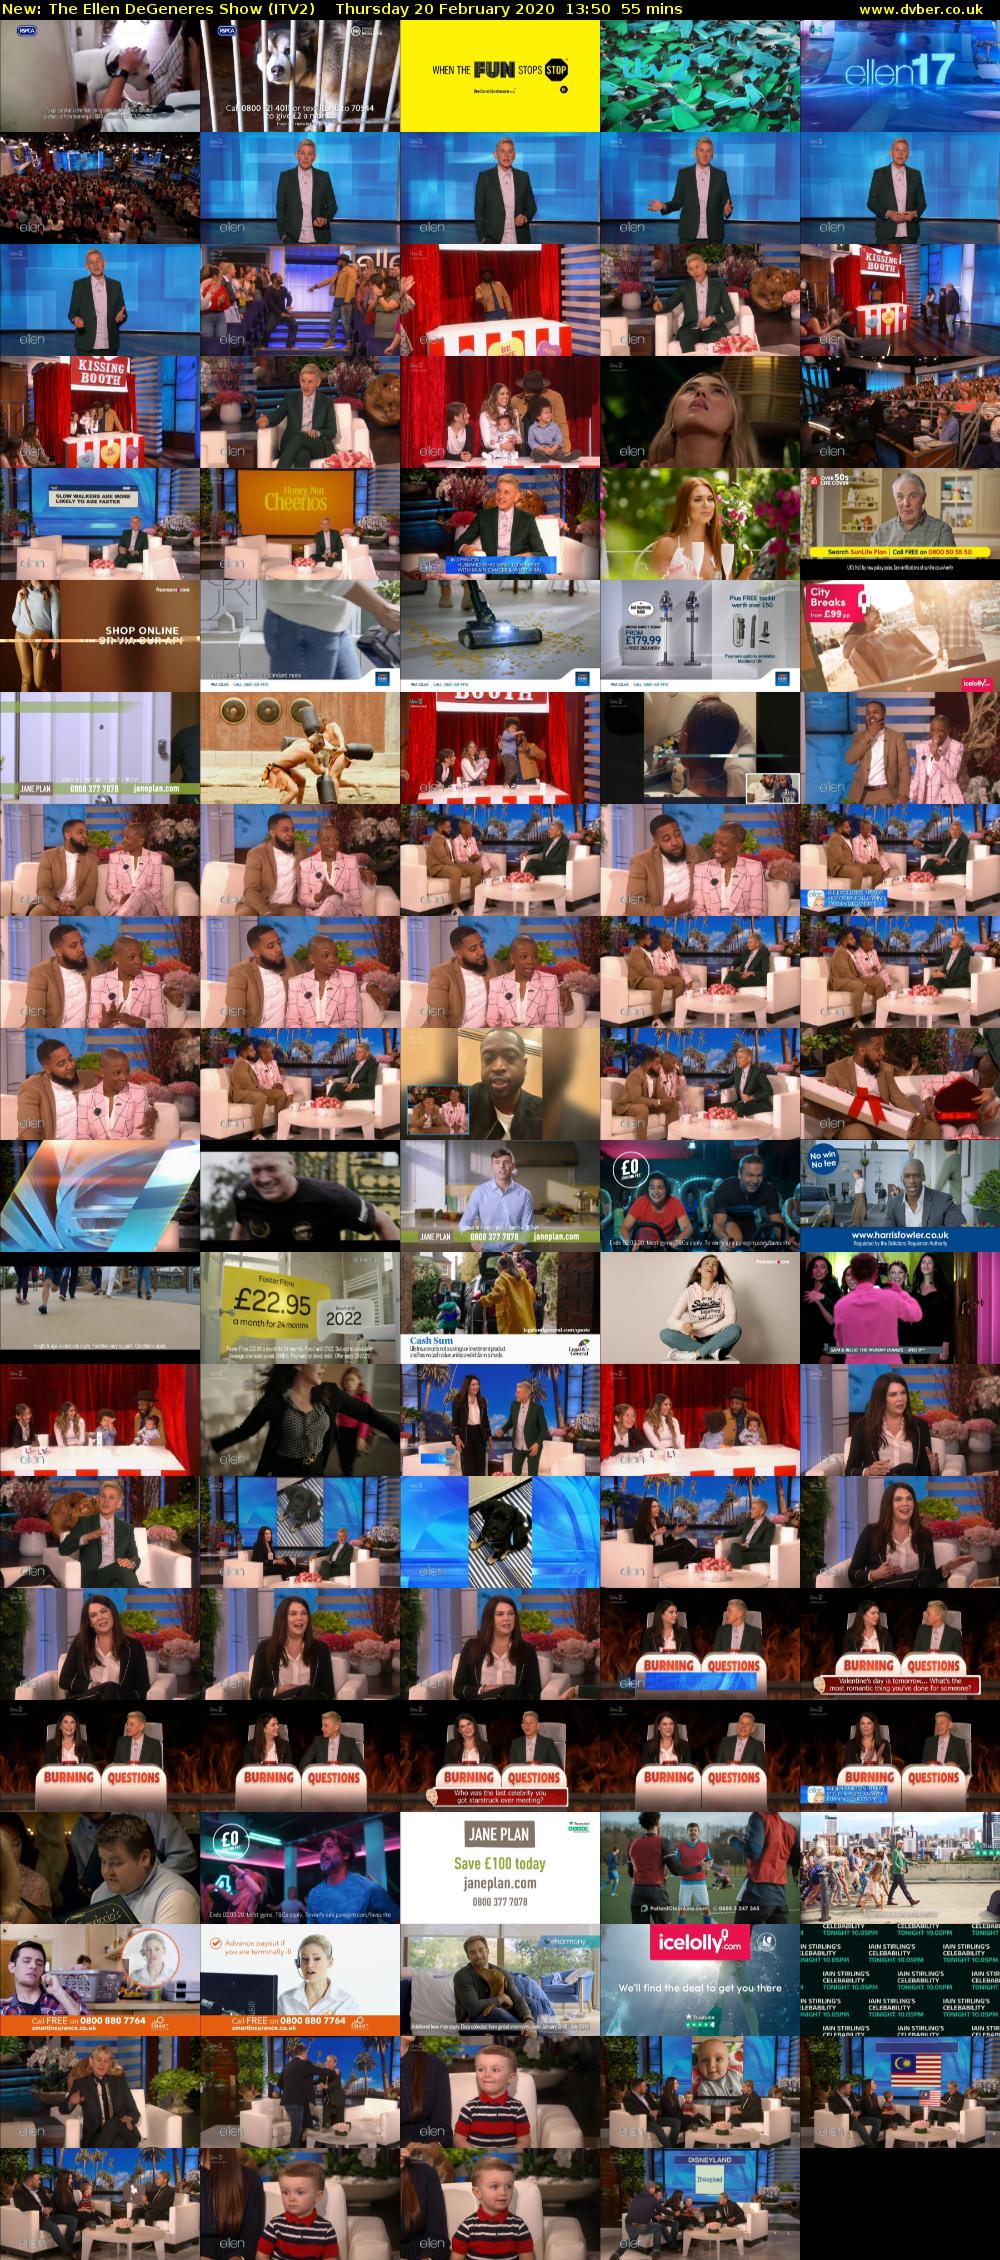 The Ellen DeGeneres Show (ITV2) Thursday 20 February 2020 13:50 - 14:45